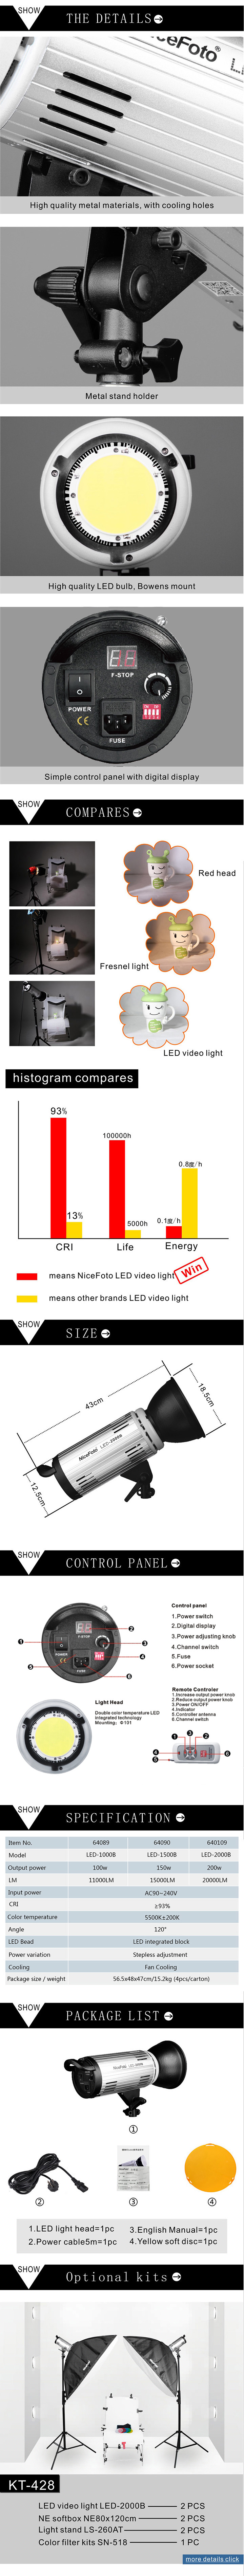 LED светодиодный осветитель NiceFoto LED-1000B (мощность 100 Вт, bowens)